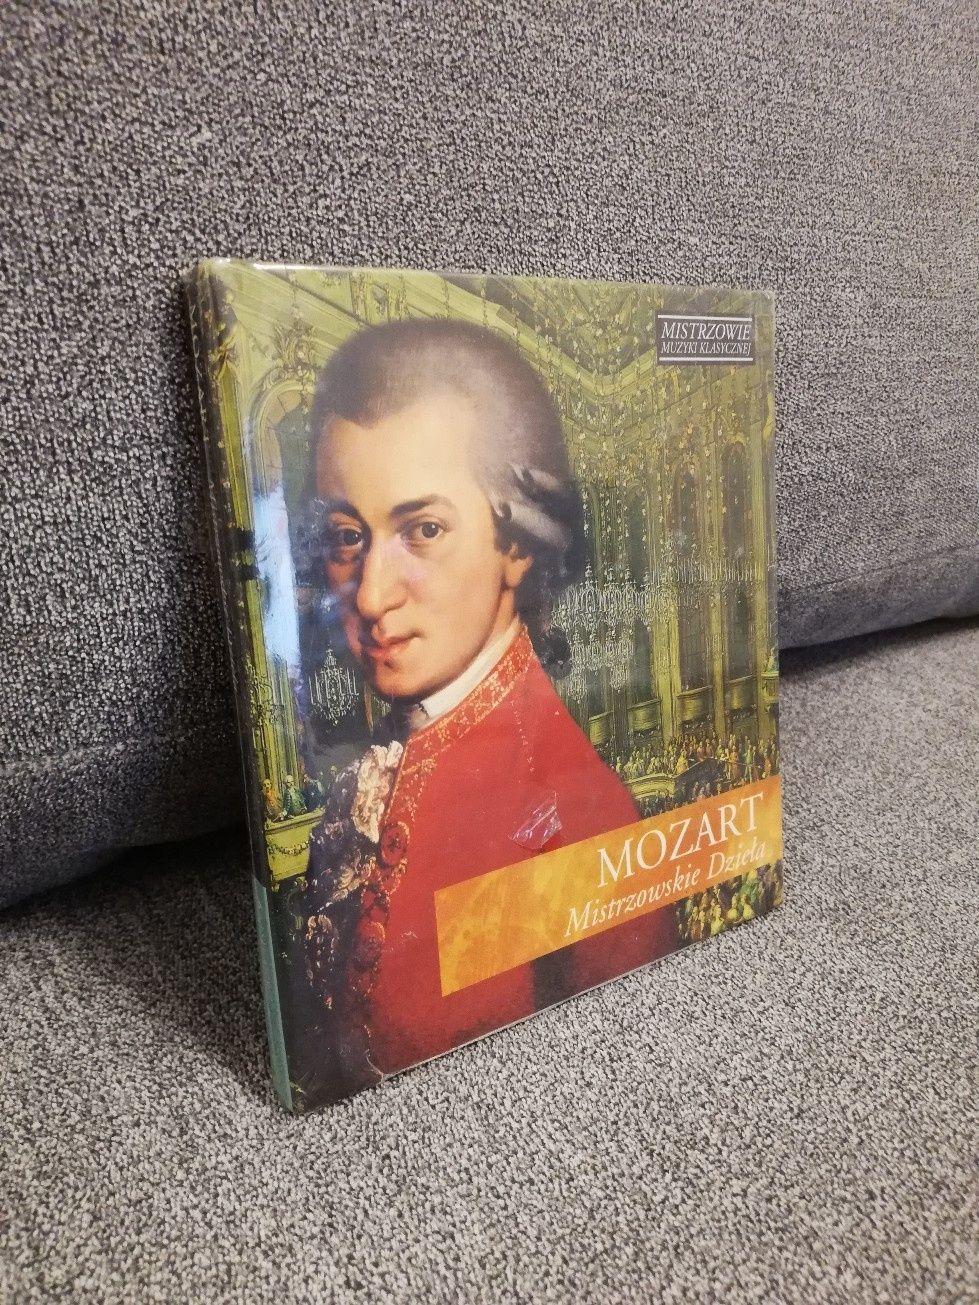 Mozart mistrzowskie dzieła CD nówka w folii